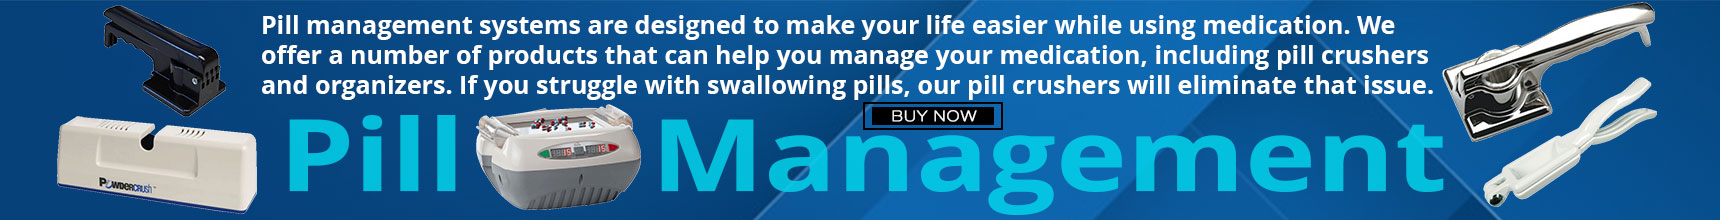 pill-management 